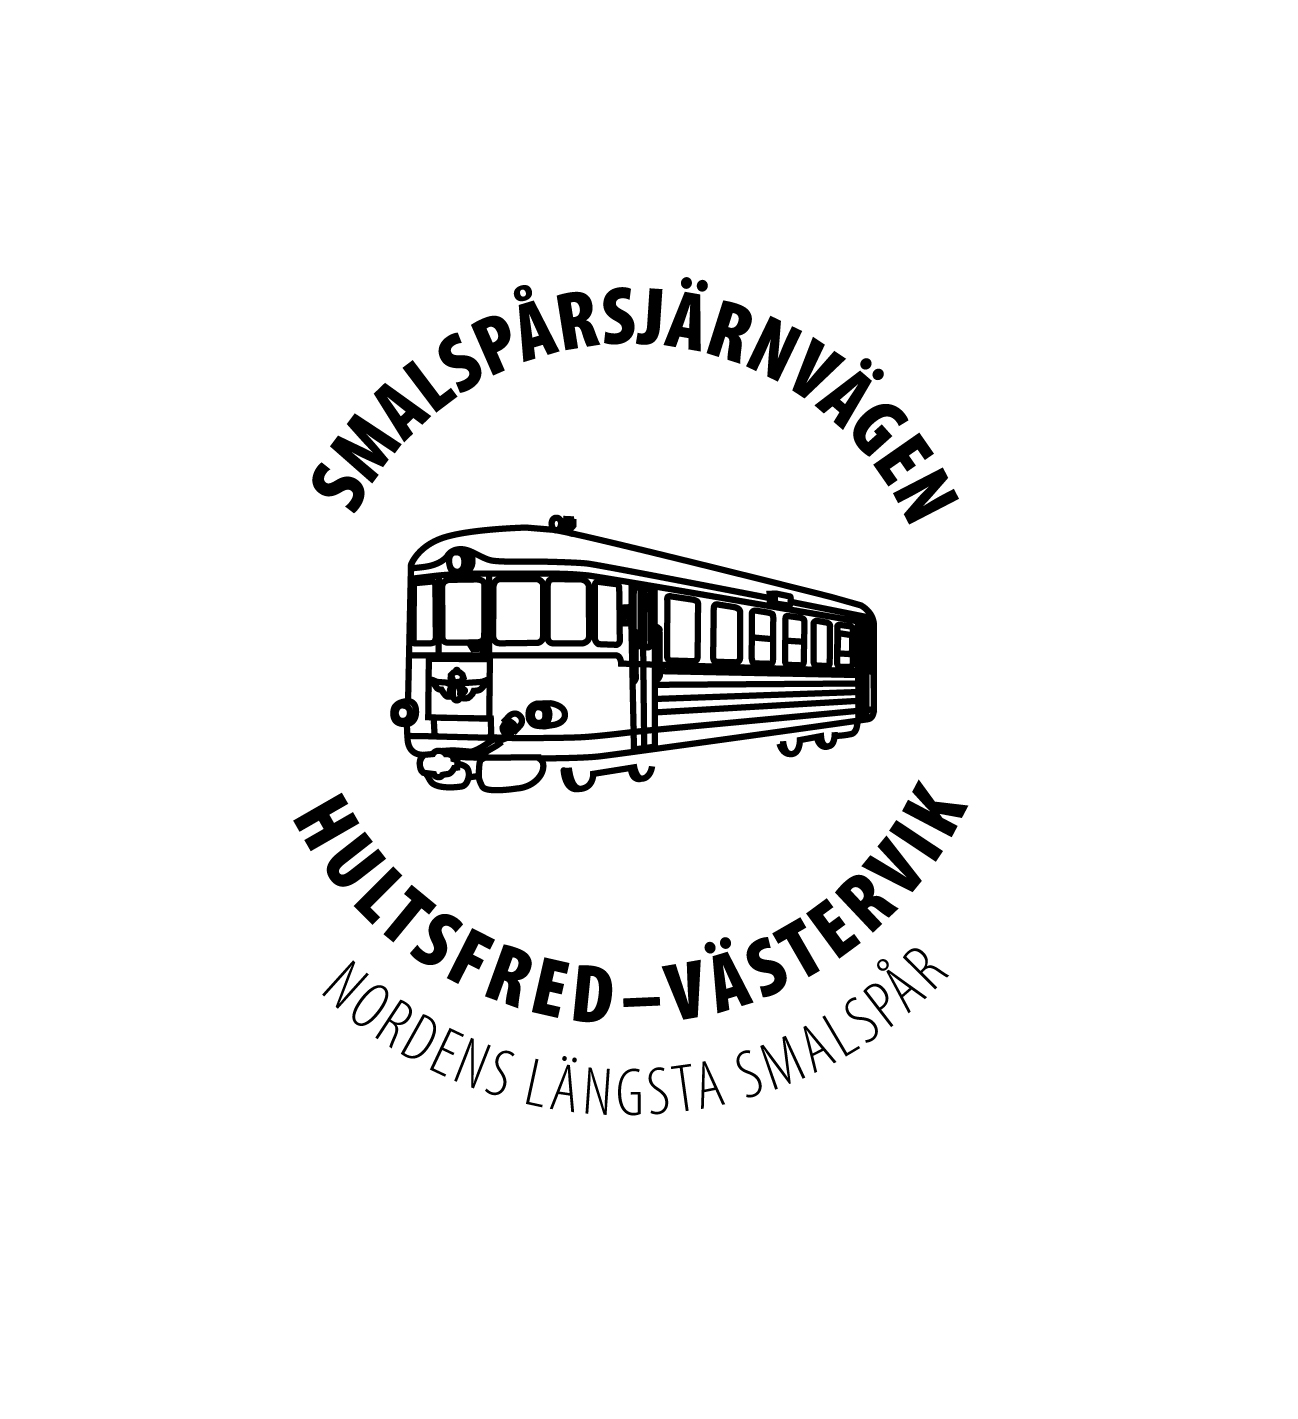 Smalspårsjärnvägen Hultsfred Västervik Nordens längsta smalspår